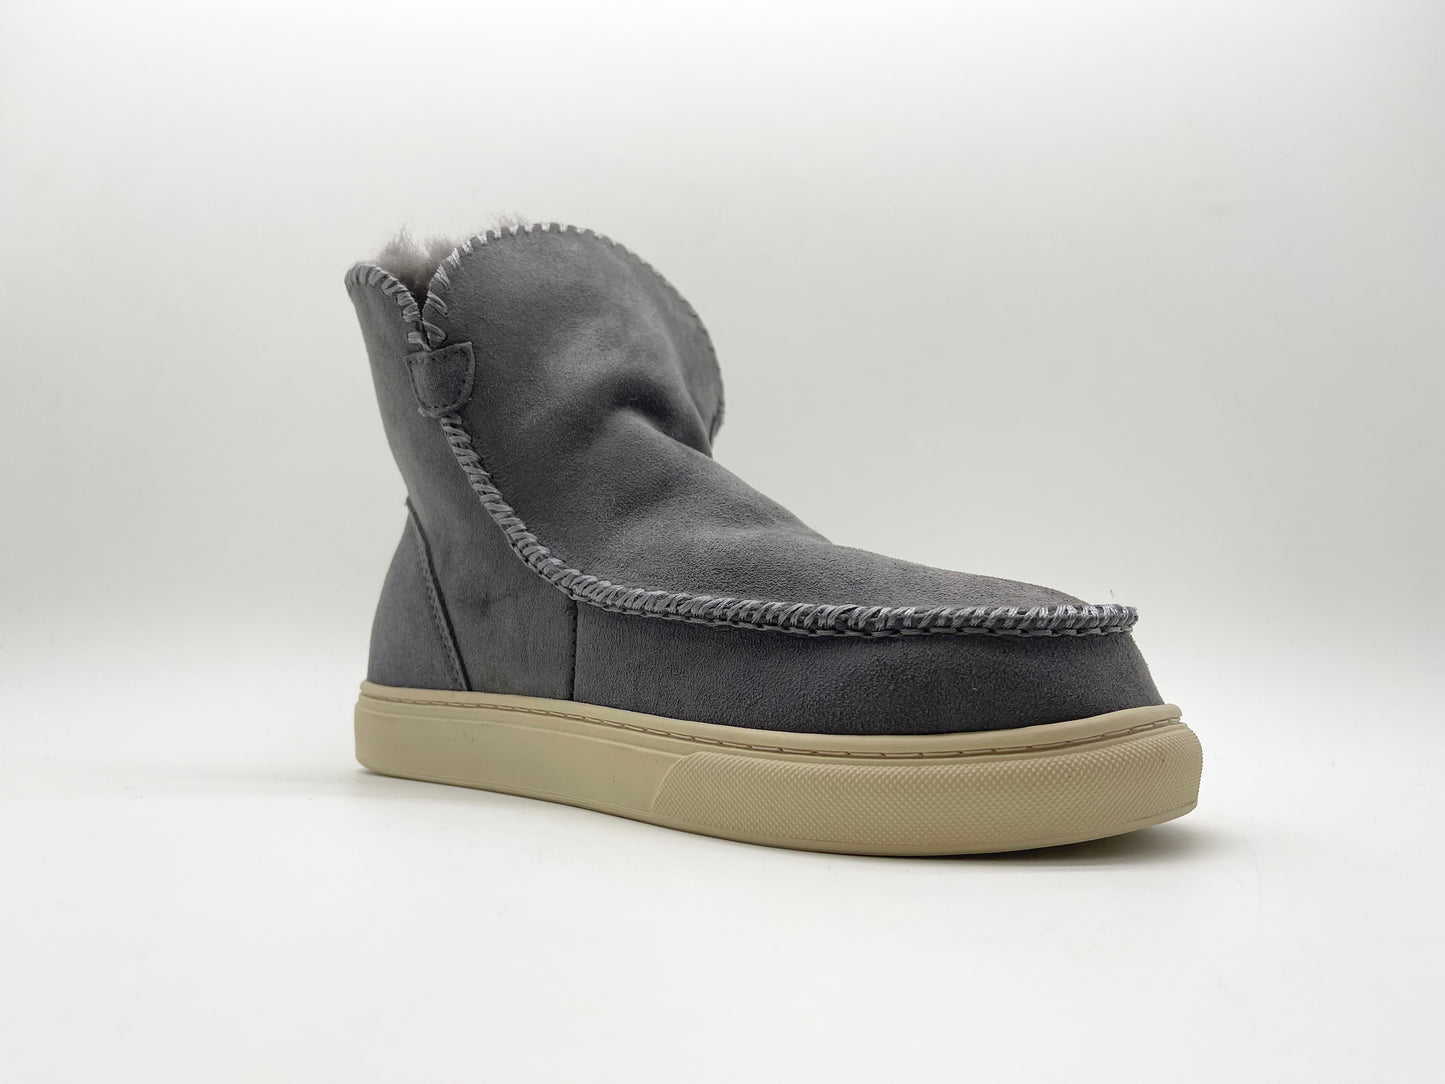 thies 1856 ® Sneakerboot 2 dark grey (W)